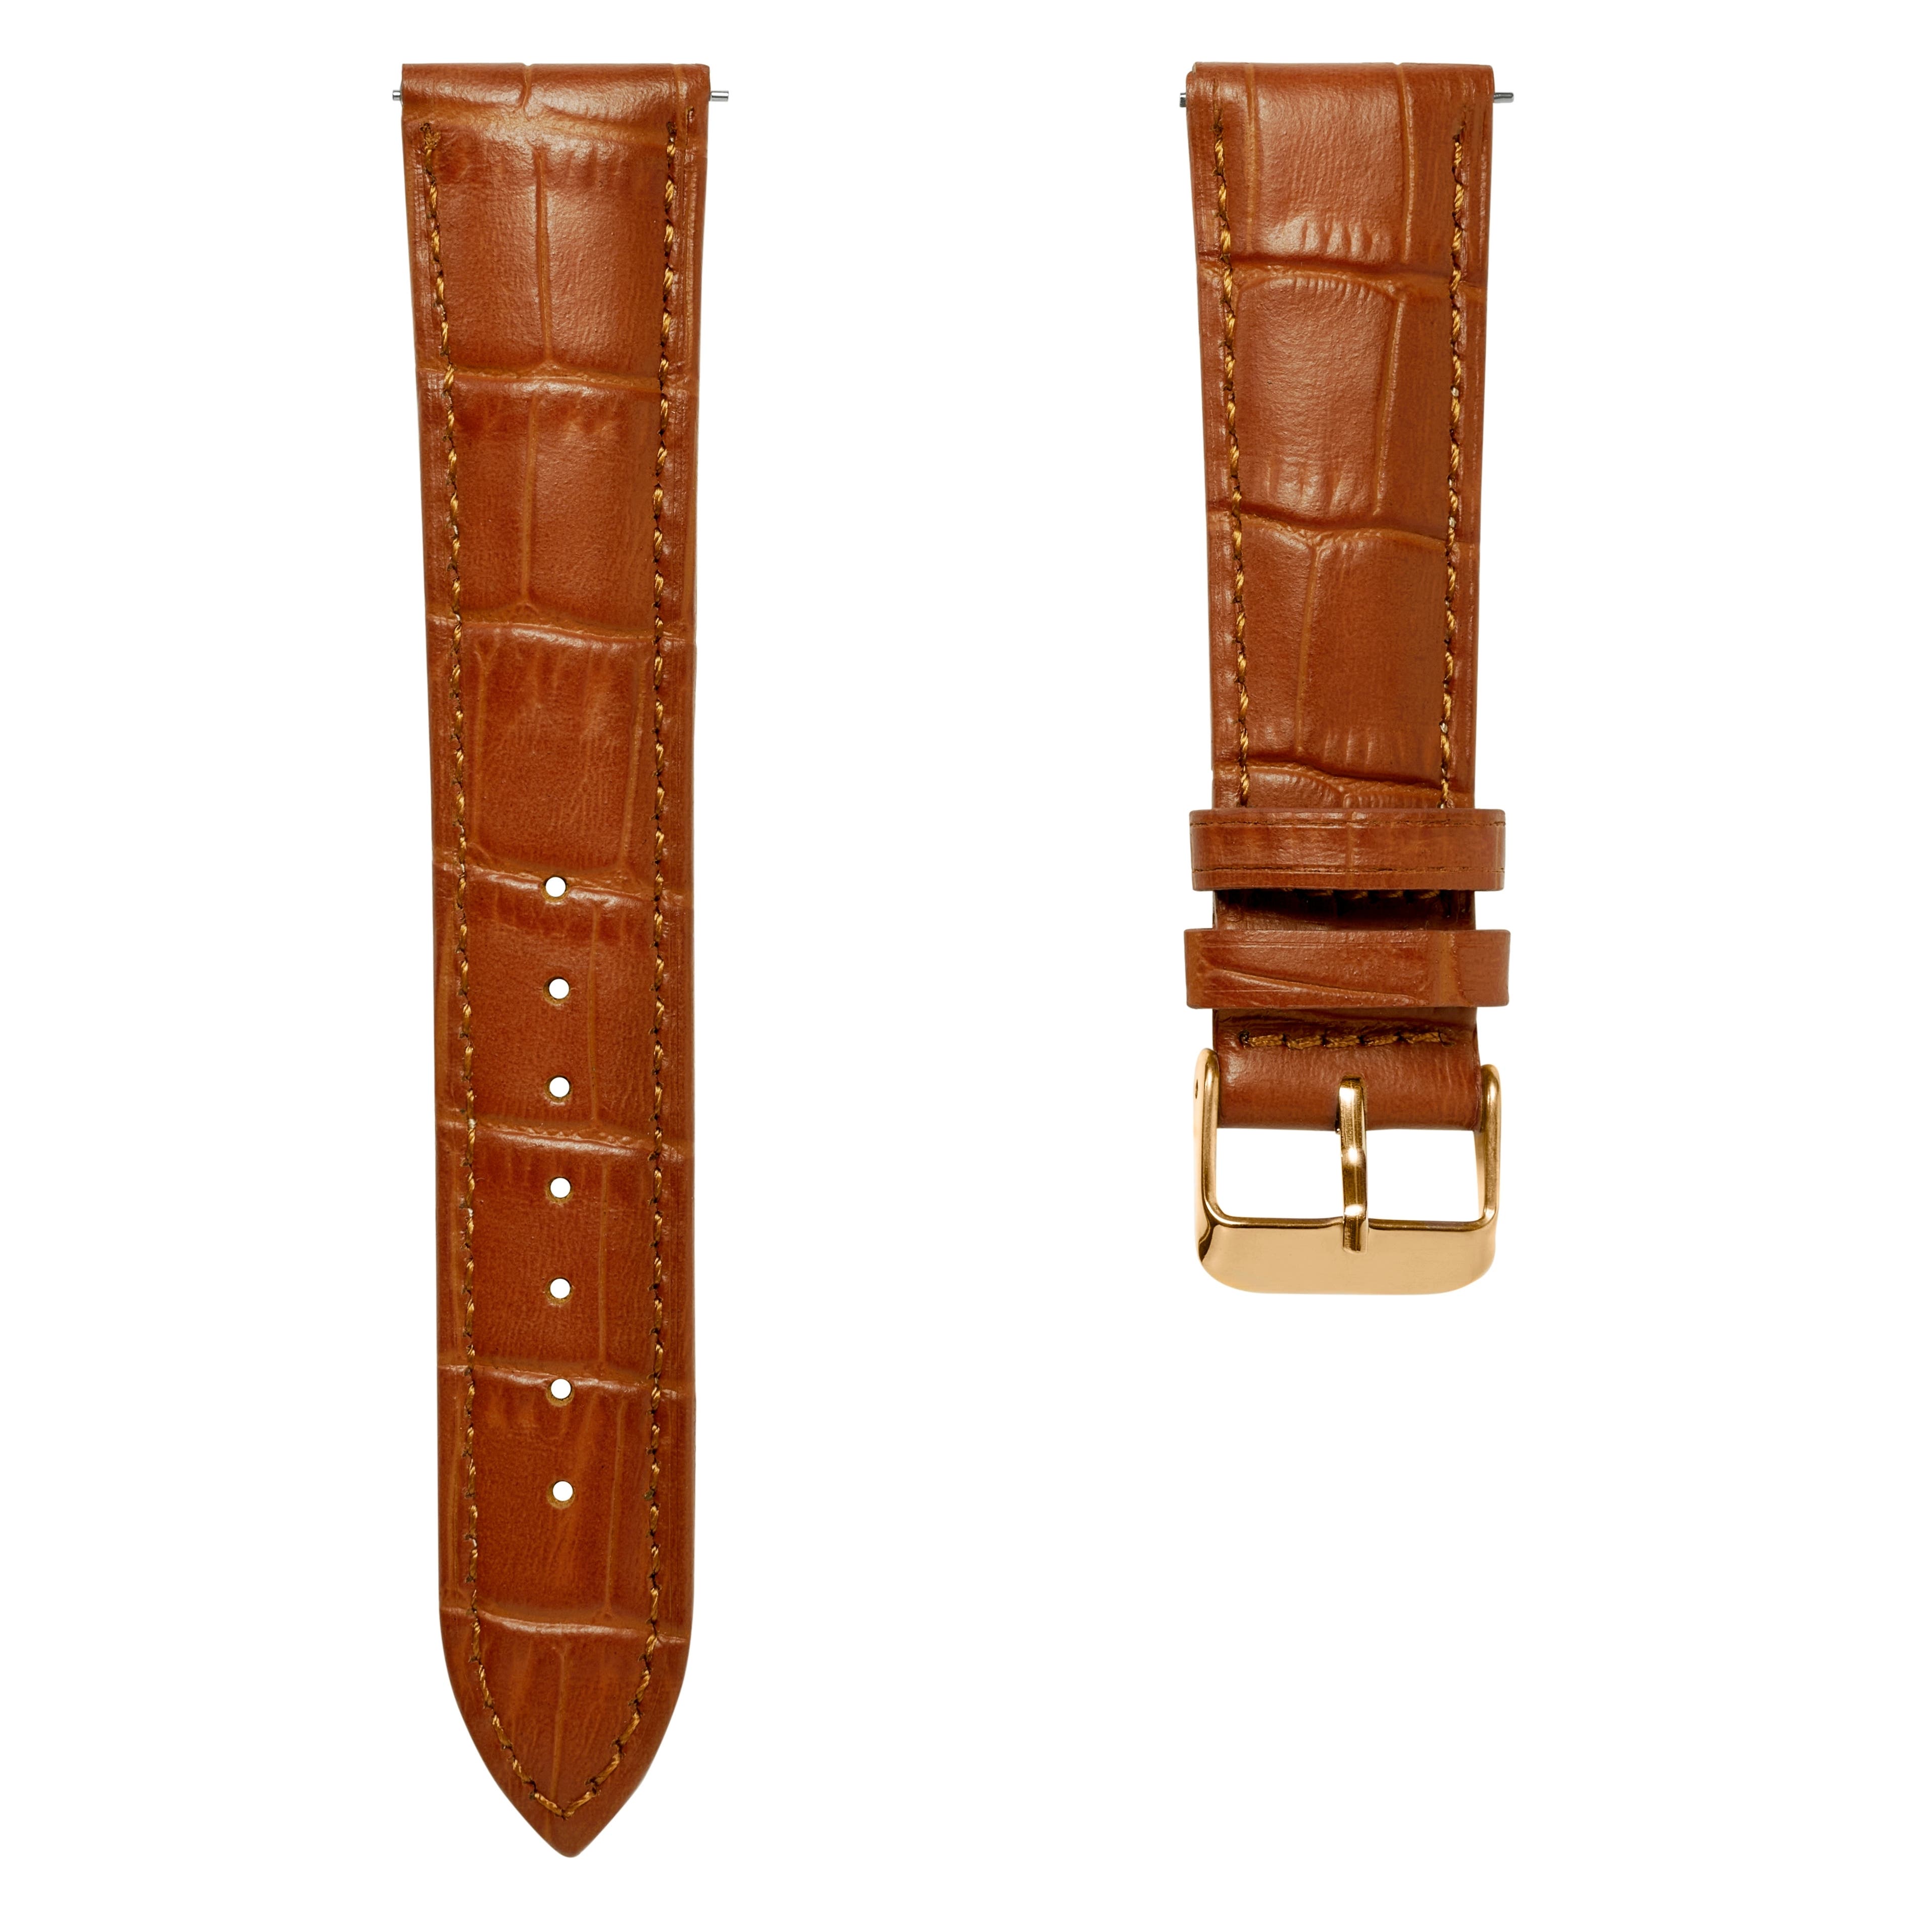 22 mm horlogeband van bruin leer met krokodillenmotief en roségoudkleurige gesp – Snelsluiting